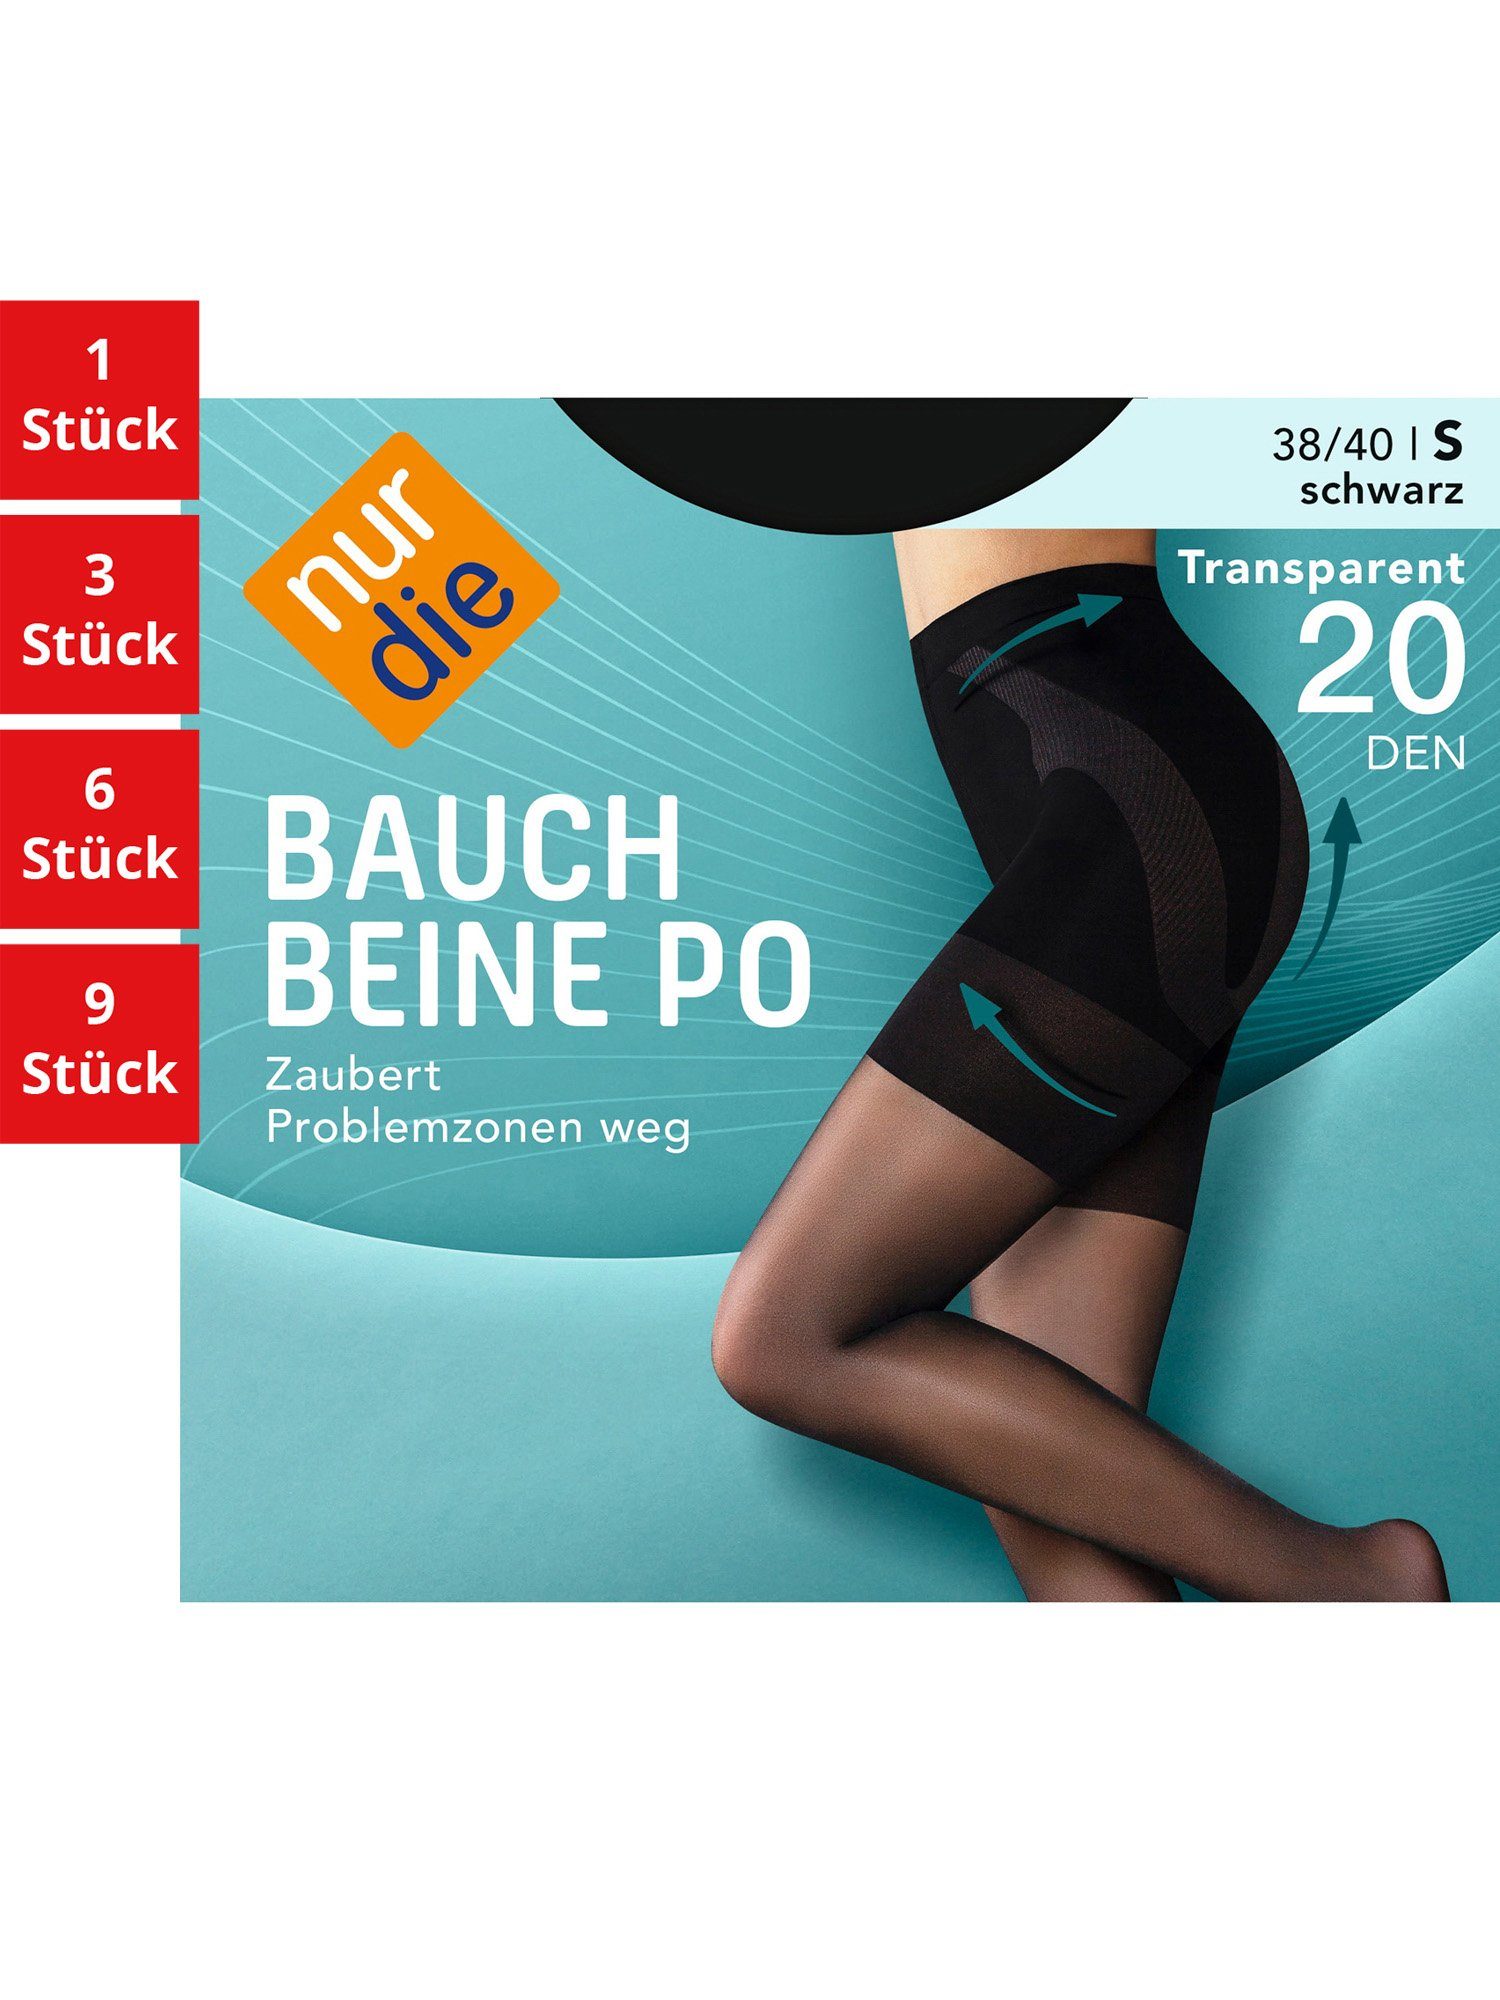 Nur Die Feinstrumpfhose Bauch-Beine-Po 20 nylon transparent multi-pack (1er/3er/6er/9er schwarz Pack St) Fein-strumpfhose Damen DEN durchsichtig frauen 1